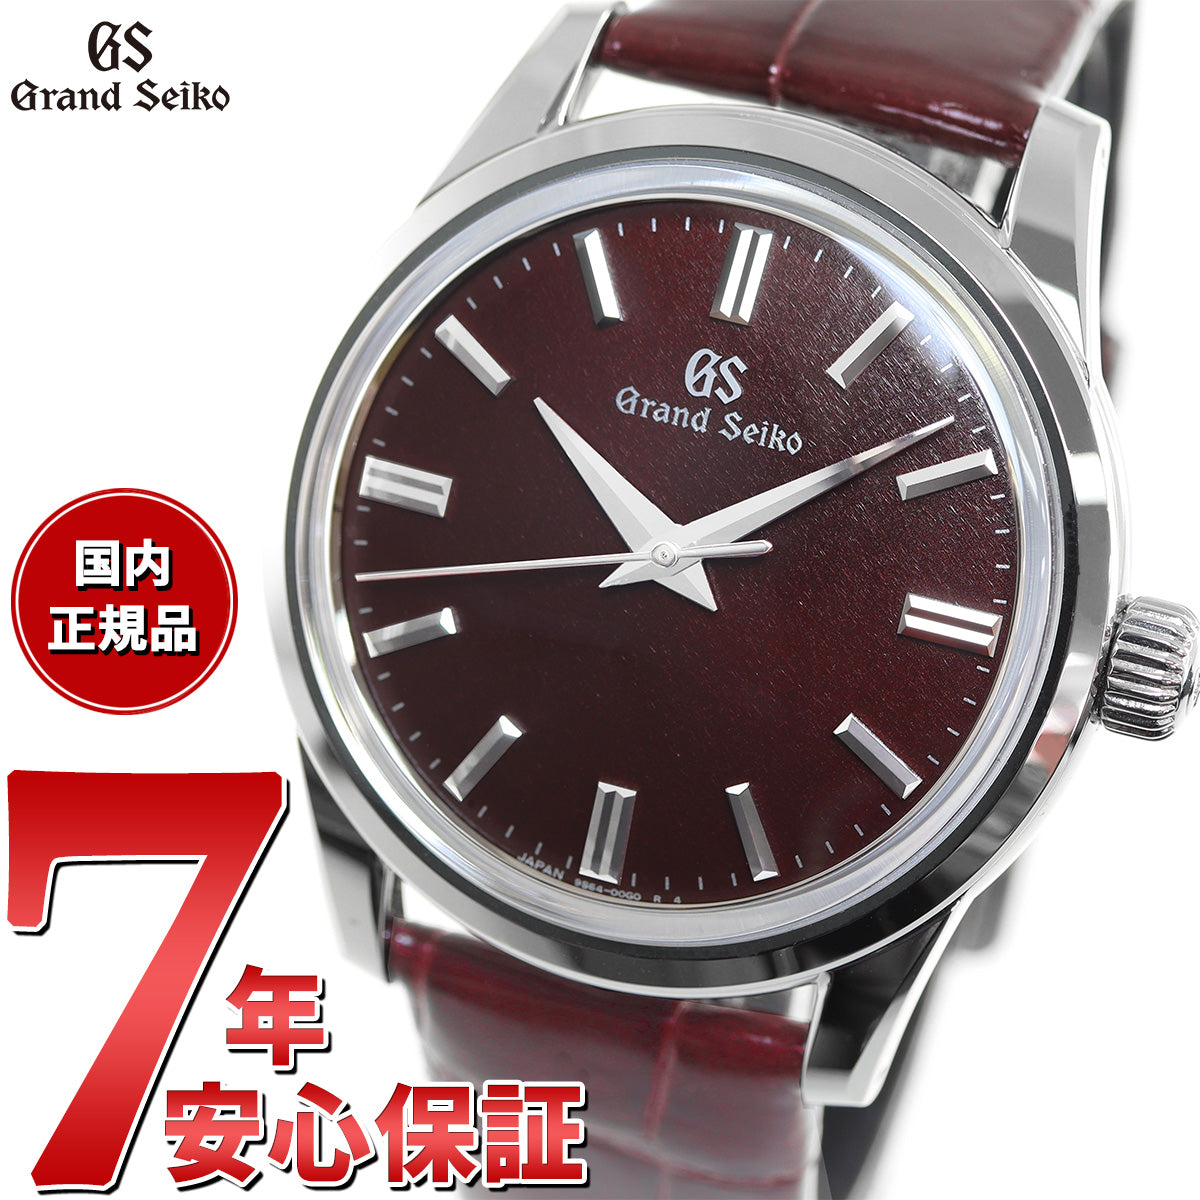 グランドセイコー GRAND SEIKO メカニカル 手巻き 革ベルト 腕時計